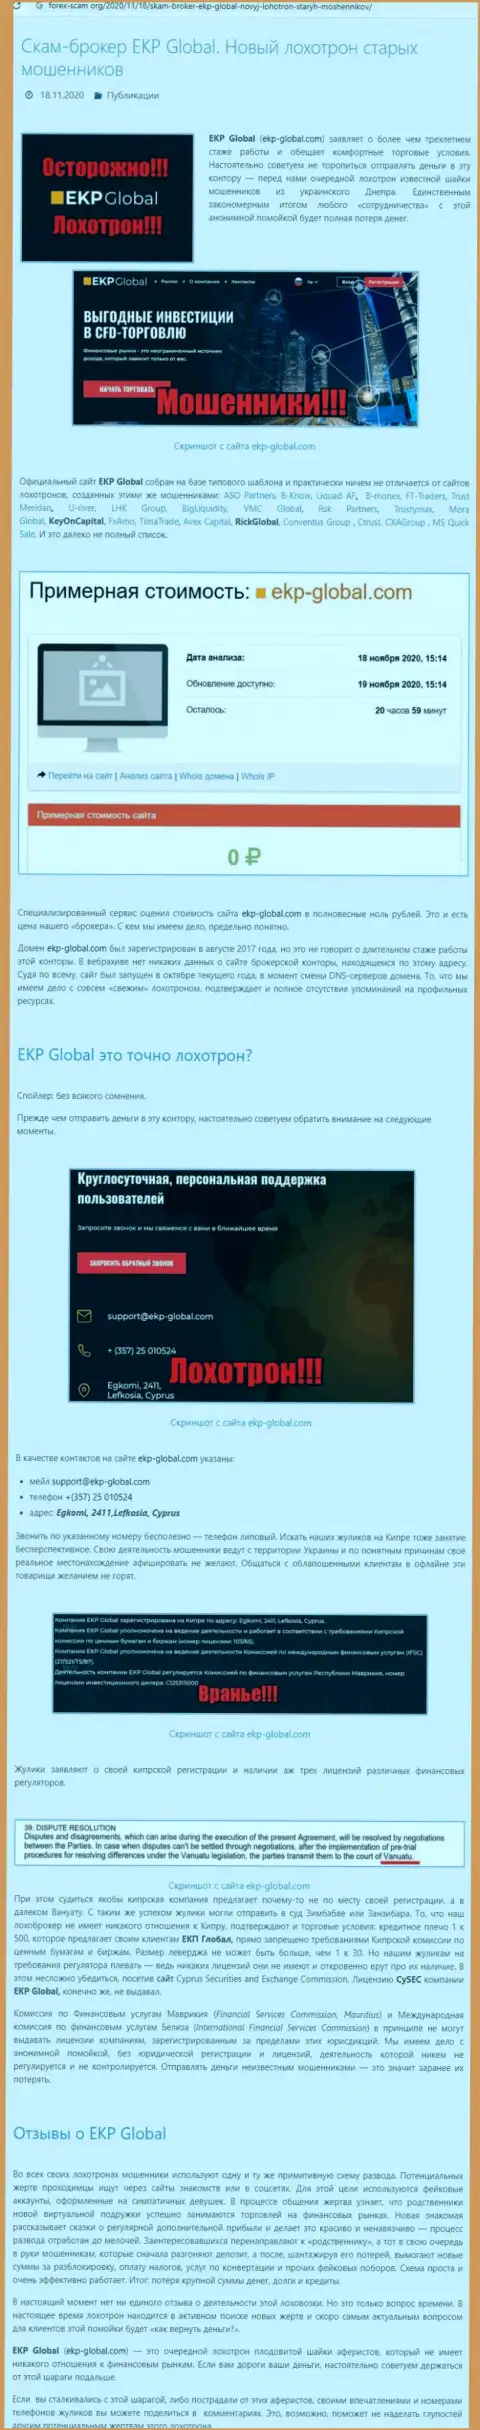 Из компании ЕКП Глобал вернуть финансовые вложения не сможете - это обзор противозаконных действий интернет-жуликов